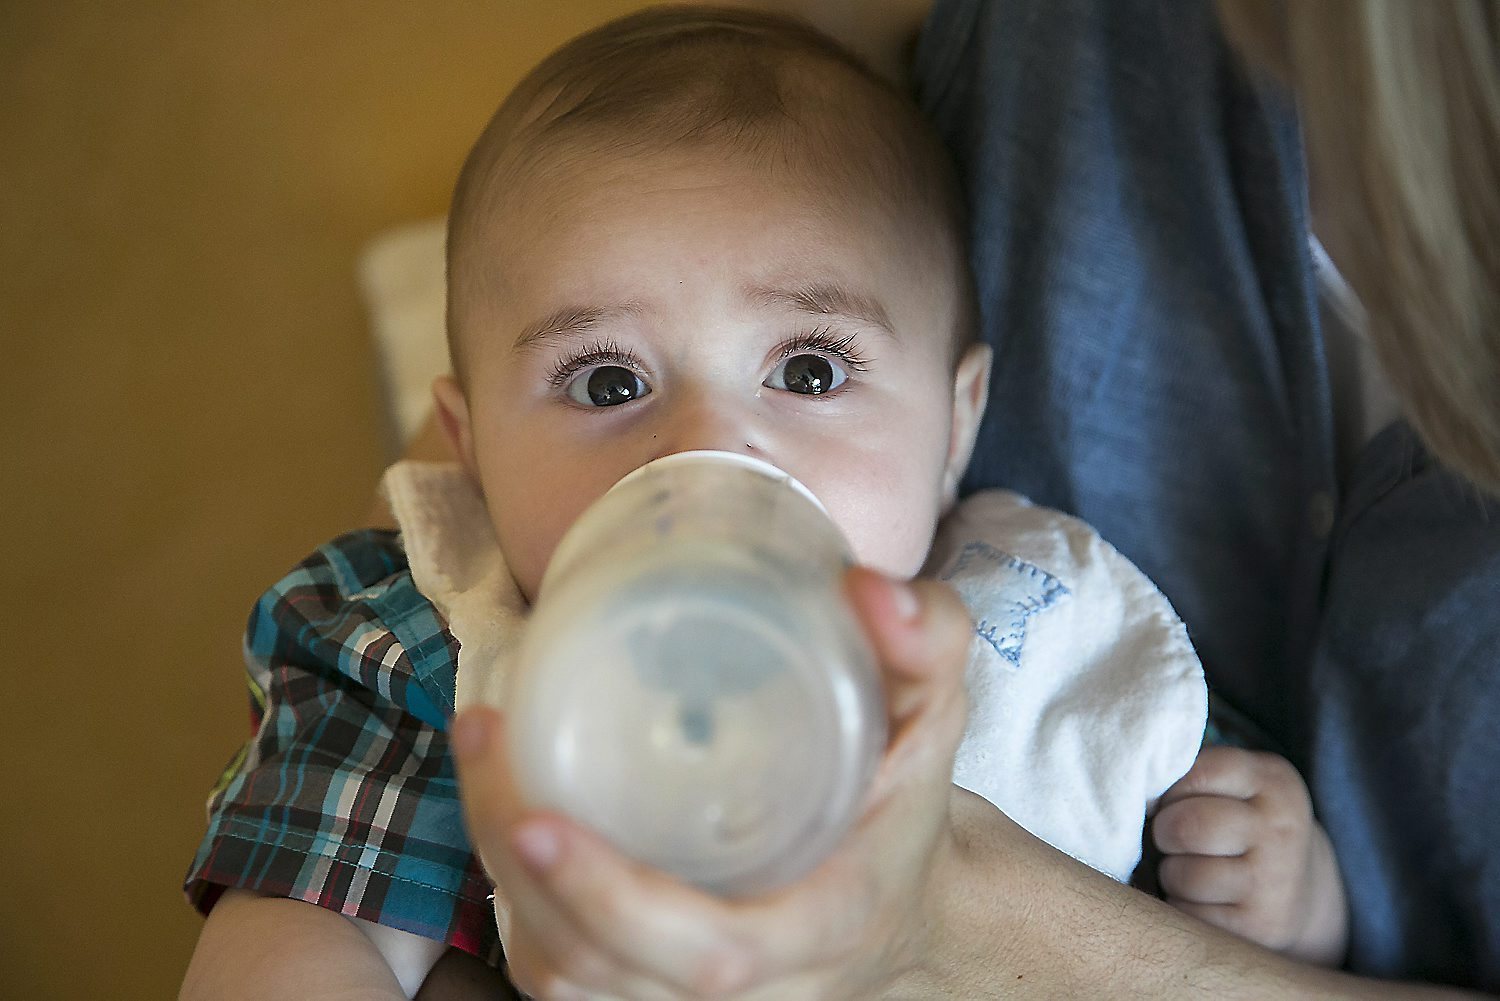 Salut no té constància de la comercialització a Andorra de les llets infantils retirades a França